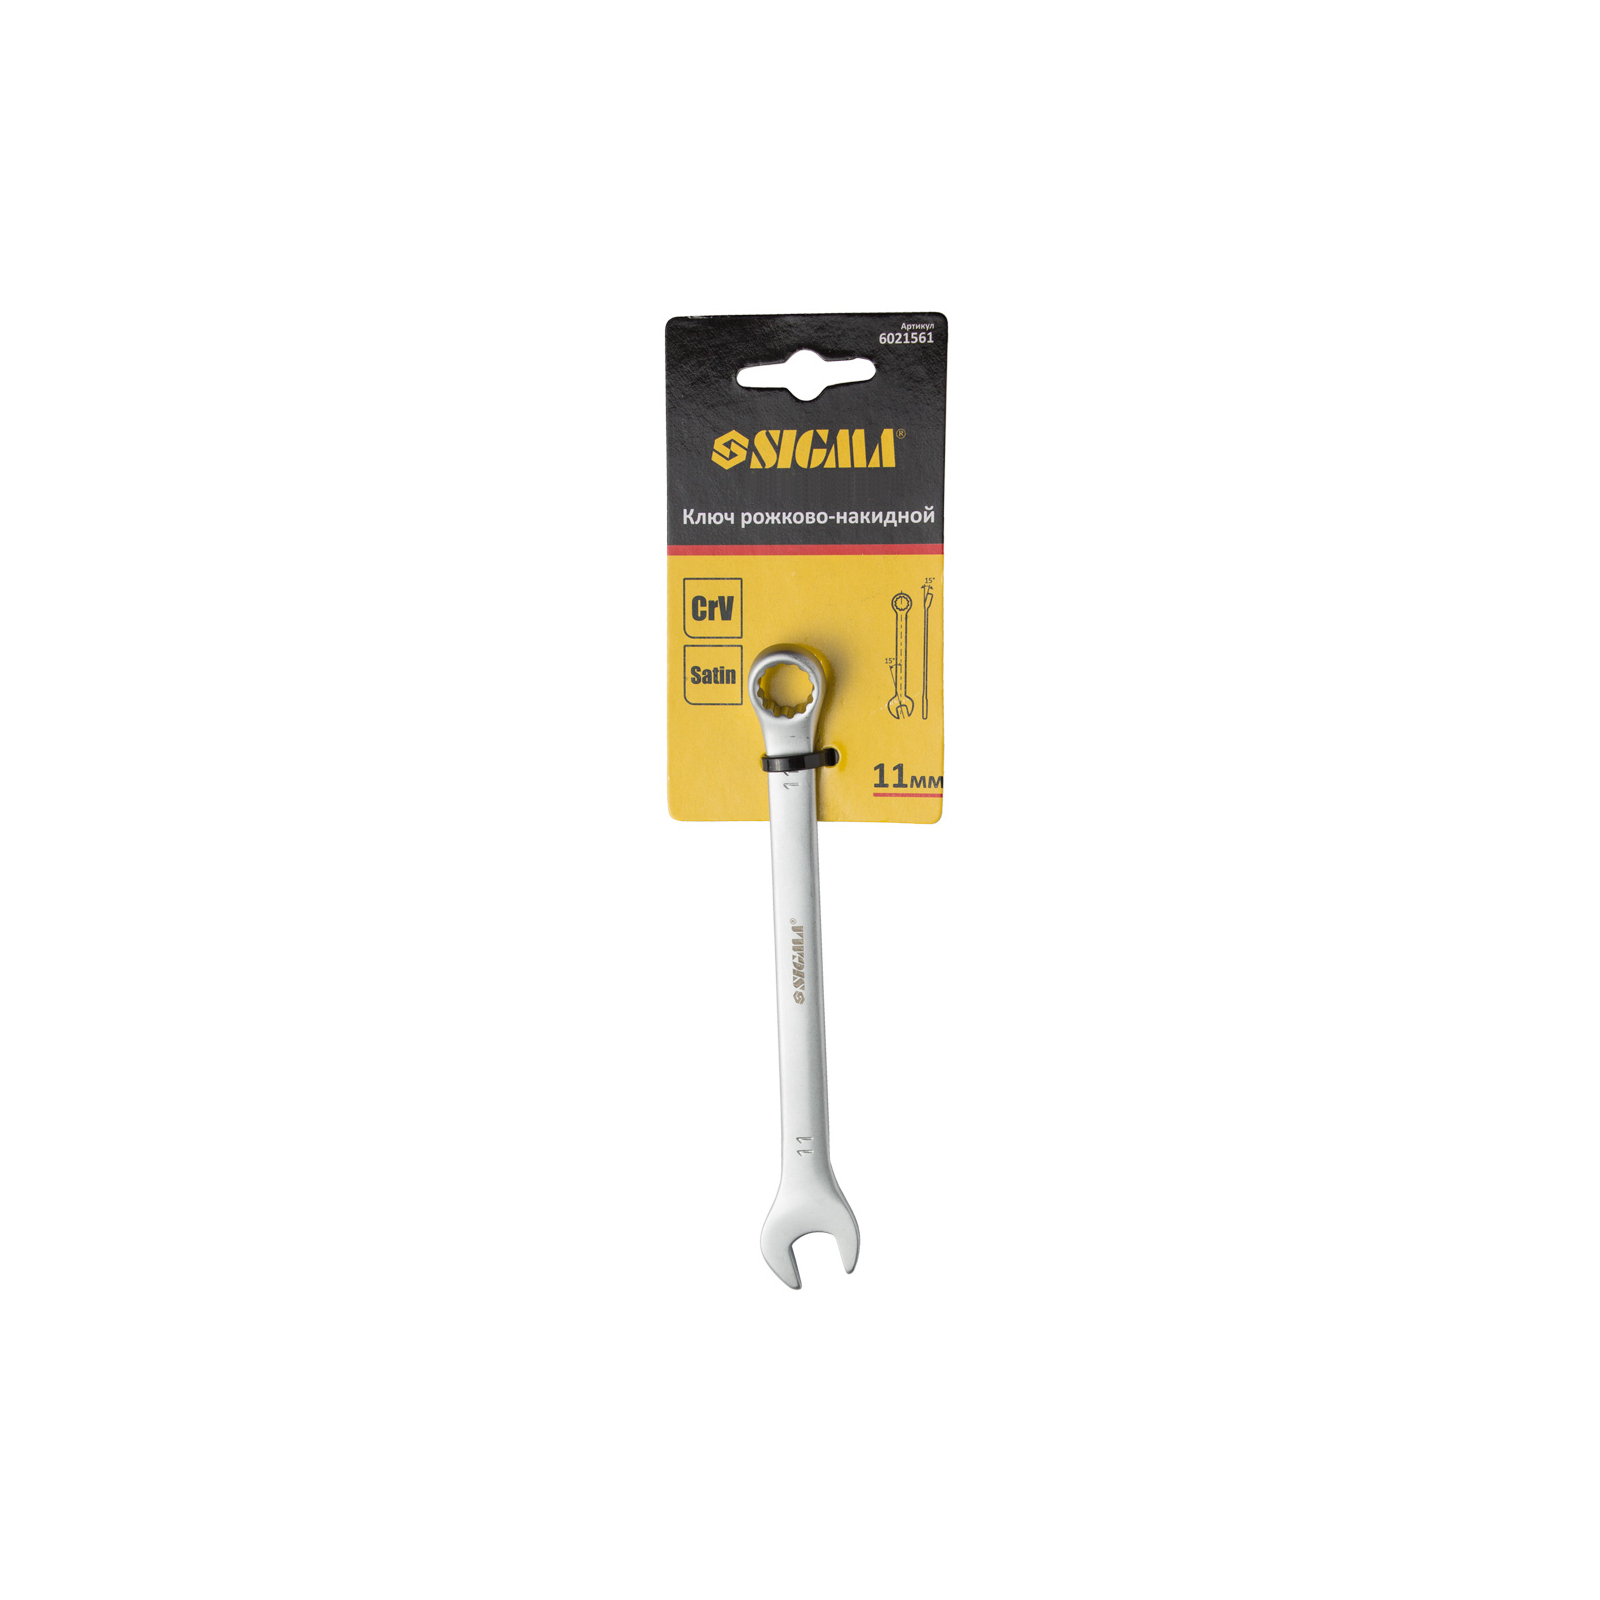 Ключ Sigma рожково-накидной 19мм CrV satine с подвесом (6021641) изображение 4